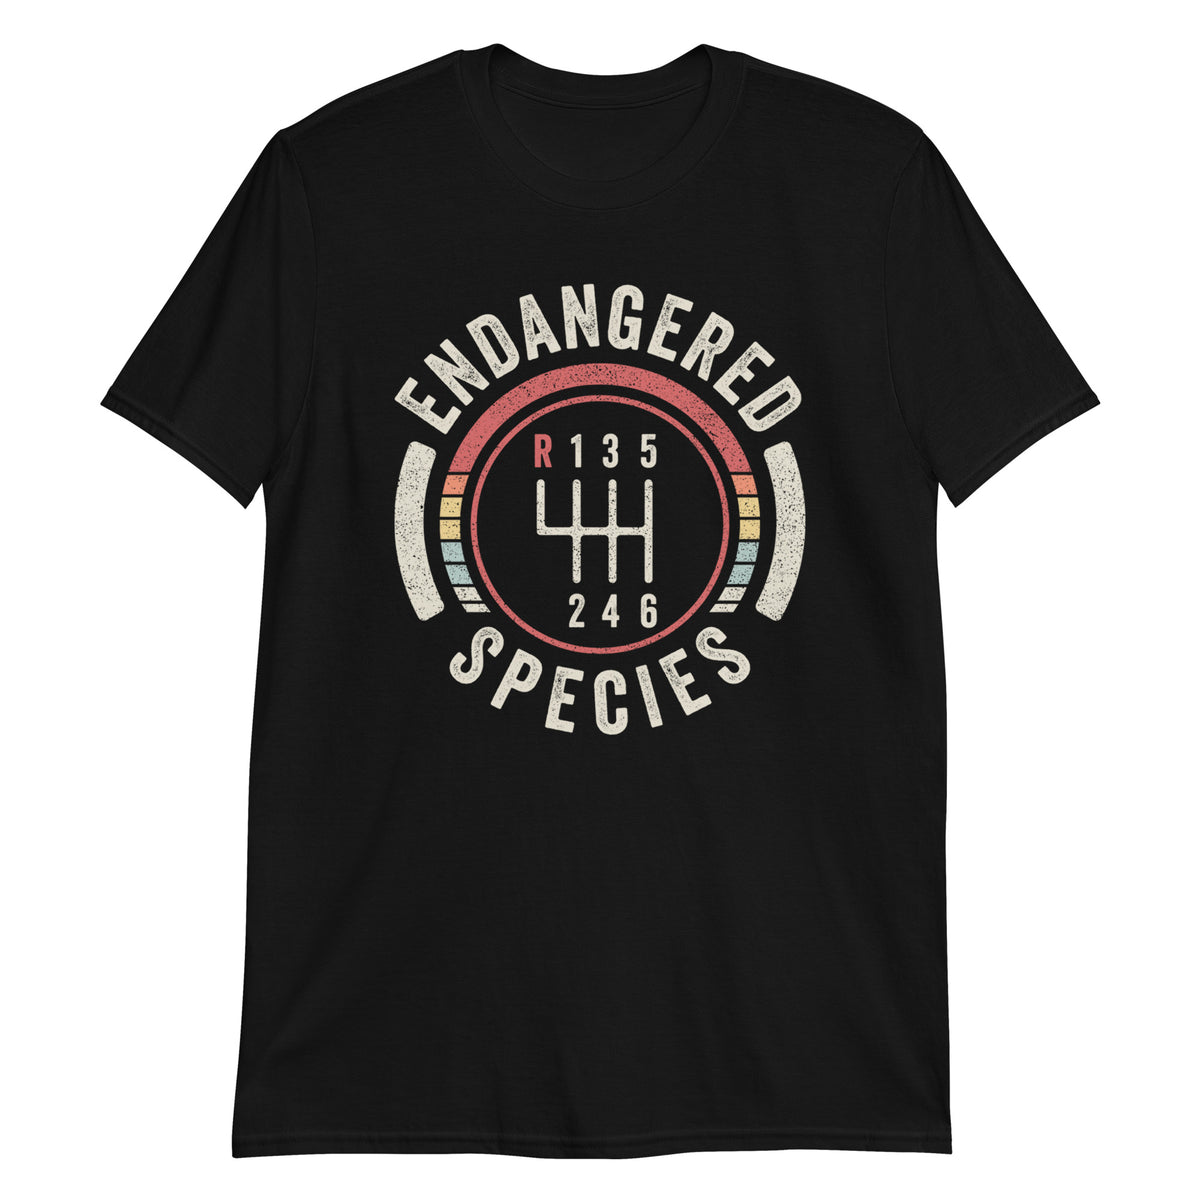 Endangered Species T-Shirt